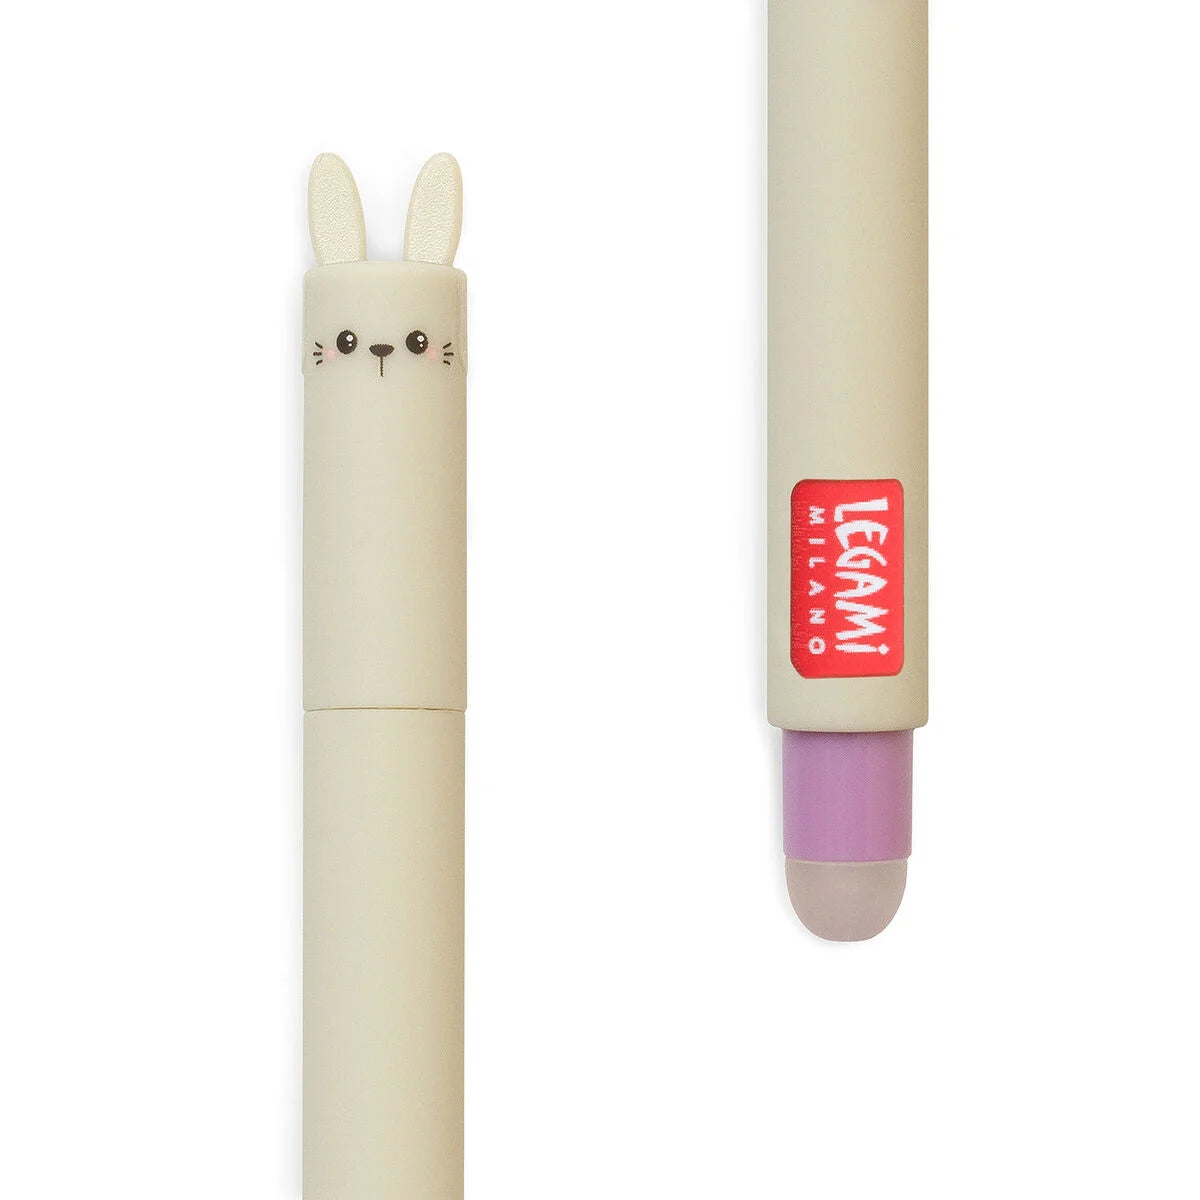 Löschbarer Gelstift - Erasable Gel Pen